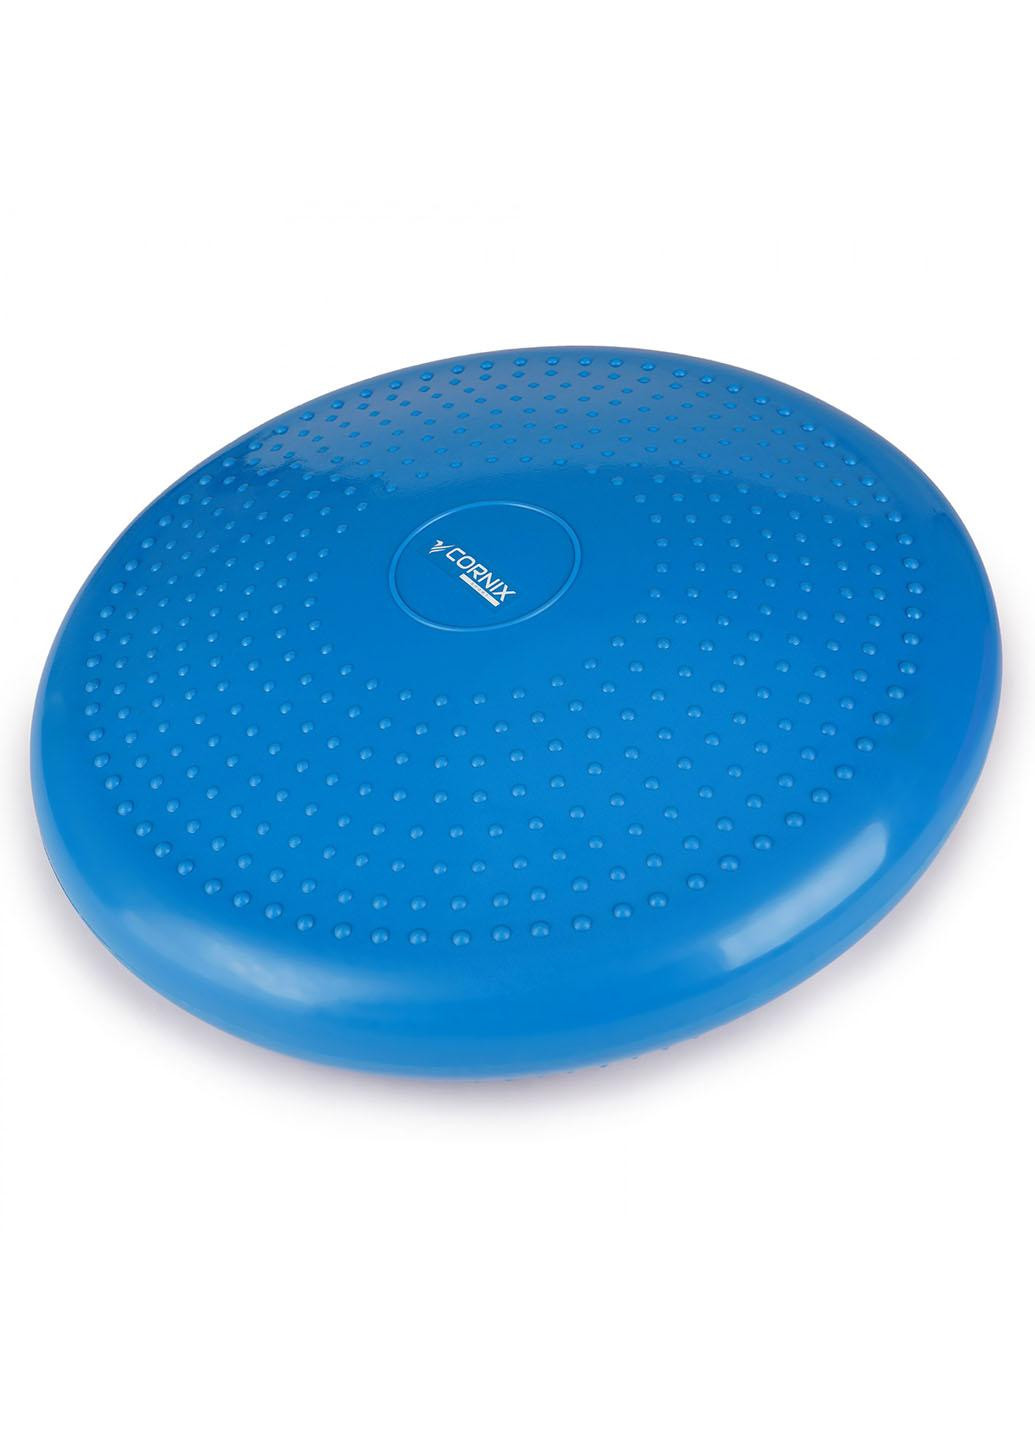 Балансировочная подушка-диск Cornix 33 см (сенсомоторная) массажная XR-0054 Blue No Brand (258354718)